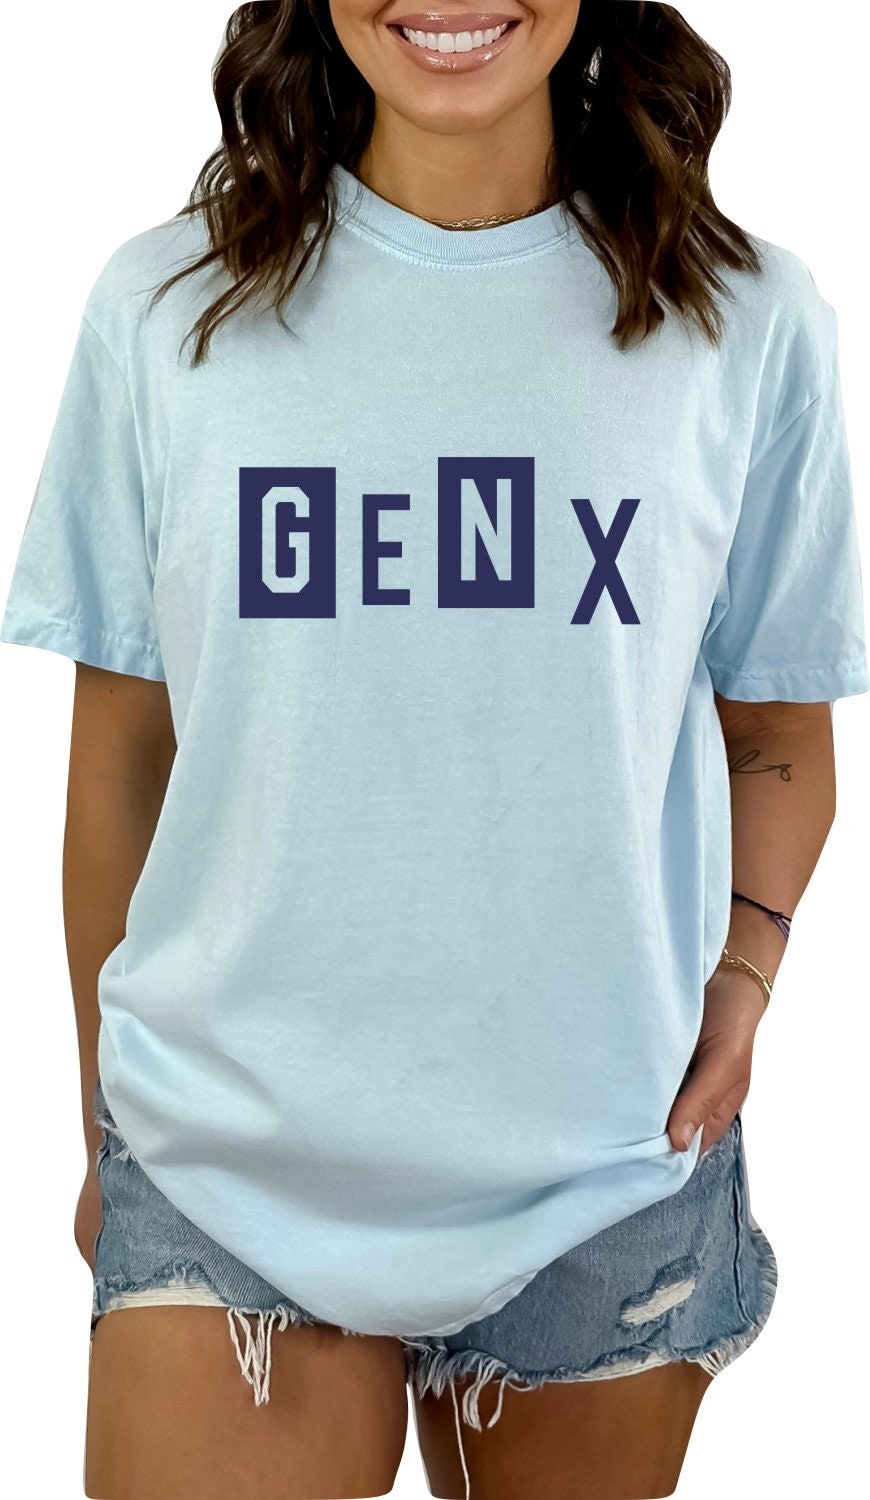 Gen X Block Colors TShirt Generation X Shirt Unisex Shirt Gen X T-Shirt Gen X TShirt Generation X T-Shirt Generation X T-Shirt